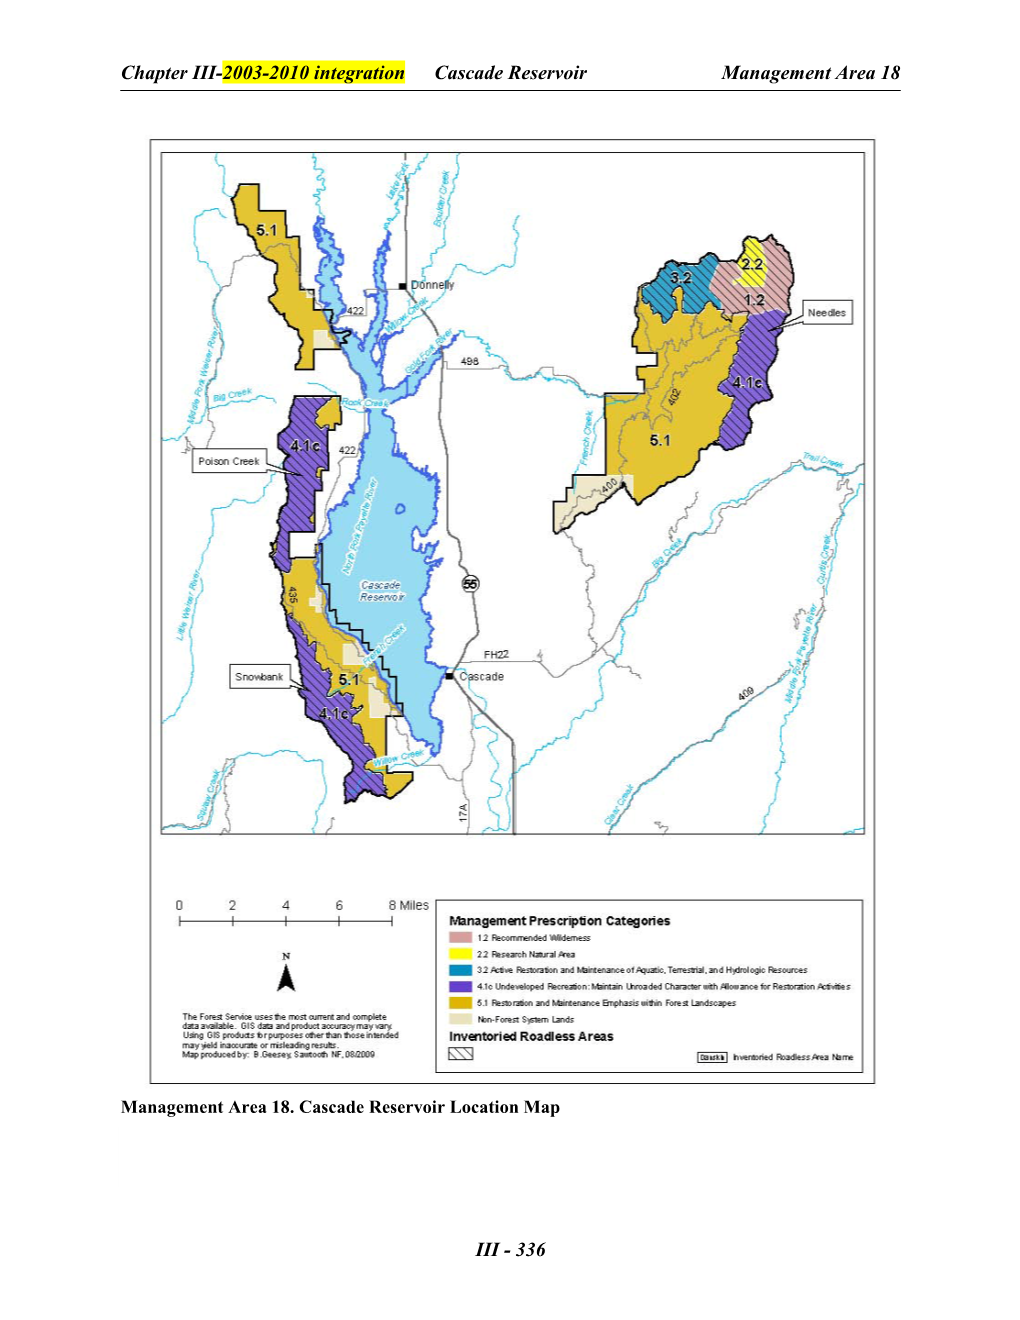 Cascade Reservoir Location Map